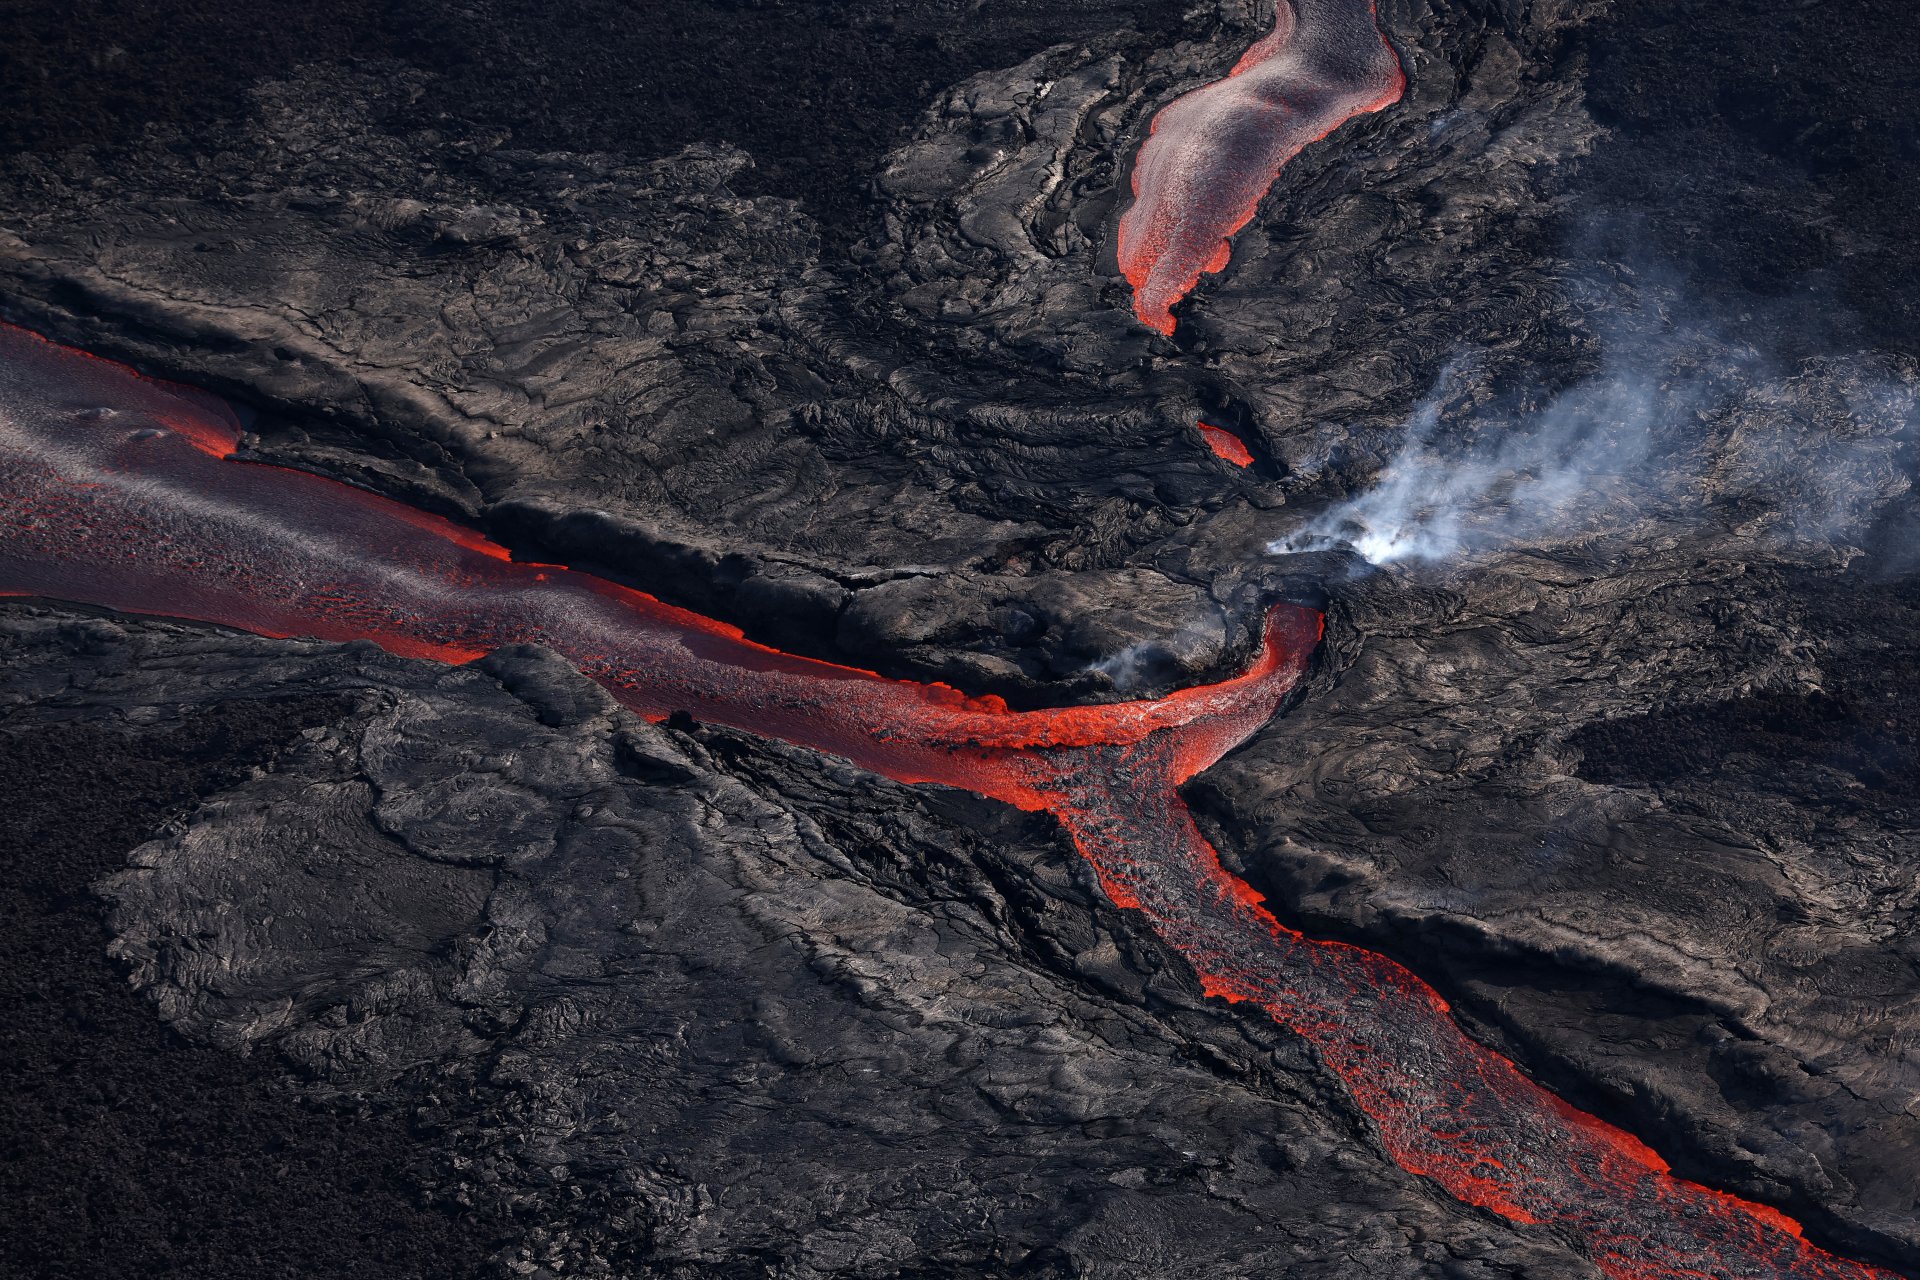  За първи път от близо 40 години вулканът Мауна Лоа, най-големият активен вулкан в света, изригна.